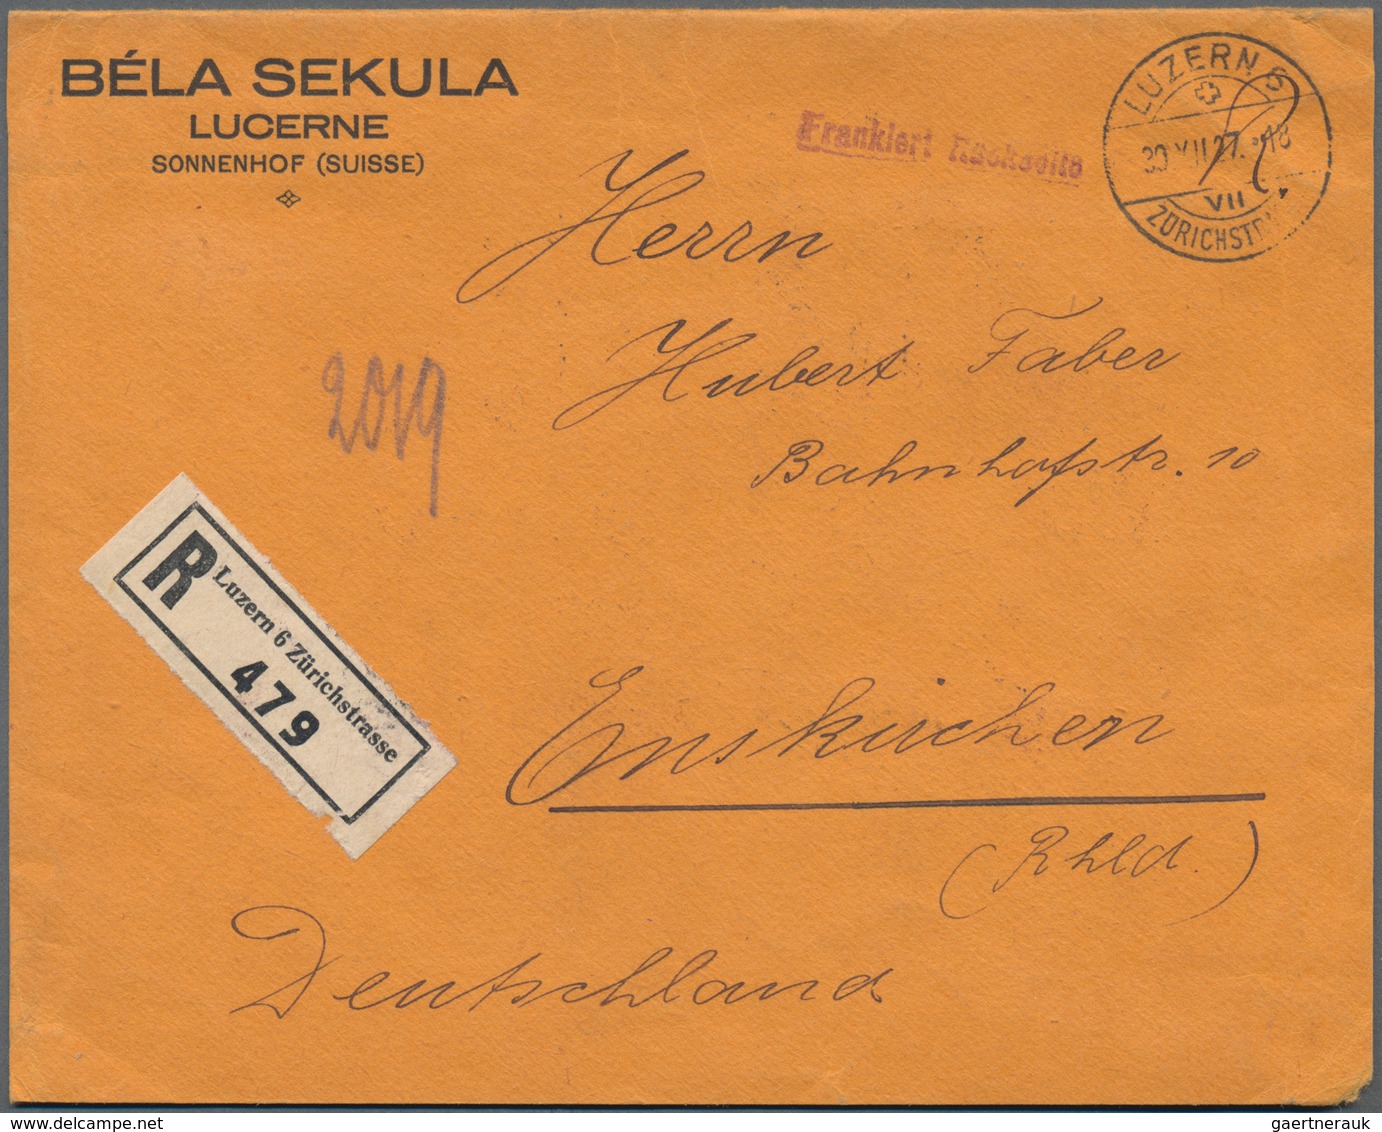 Schweiz: 1851/1981(ca.), Belegeposten Von über 290 Briefen, Postkarten Und Ganzsachen Mit Einigen Fr - Sammlungen